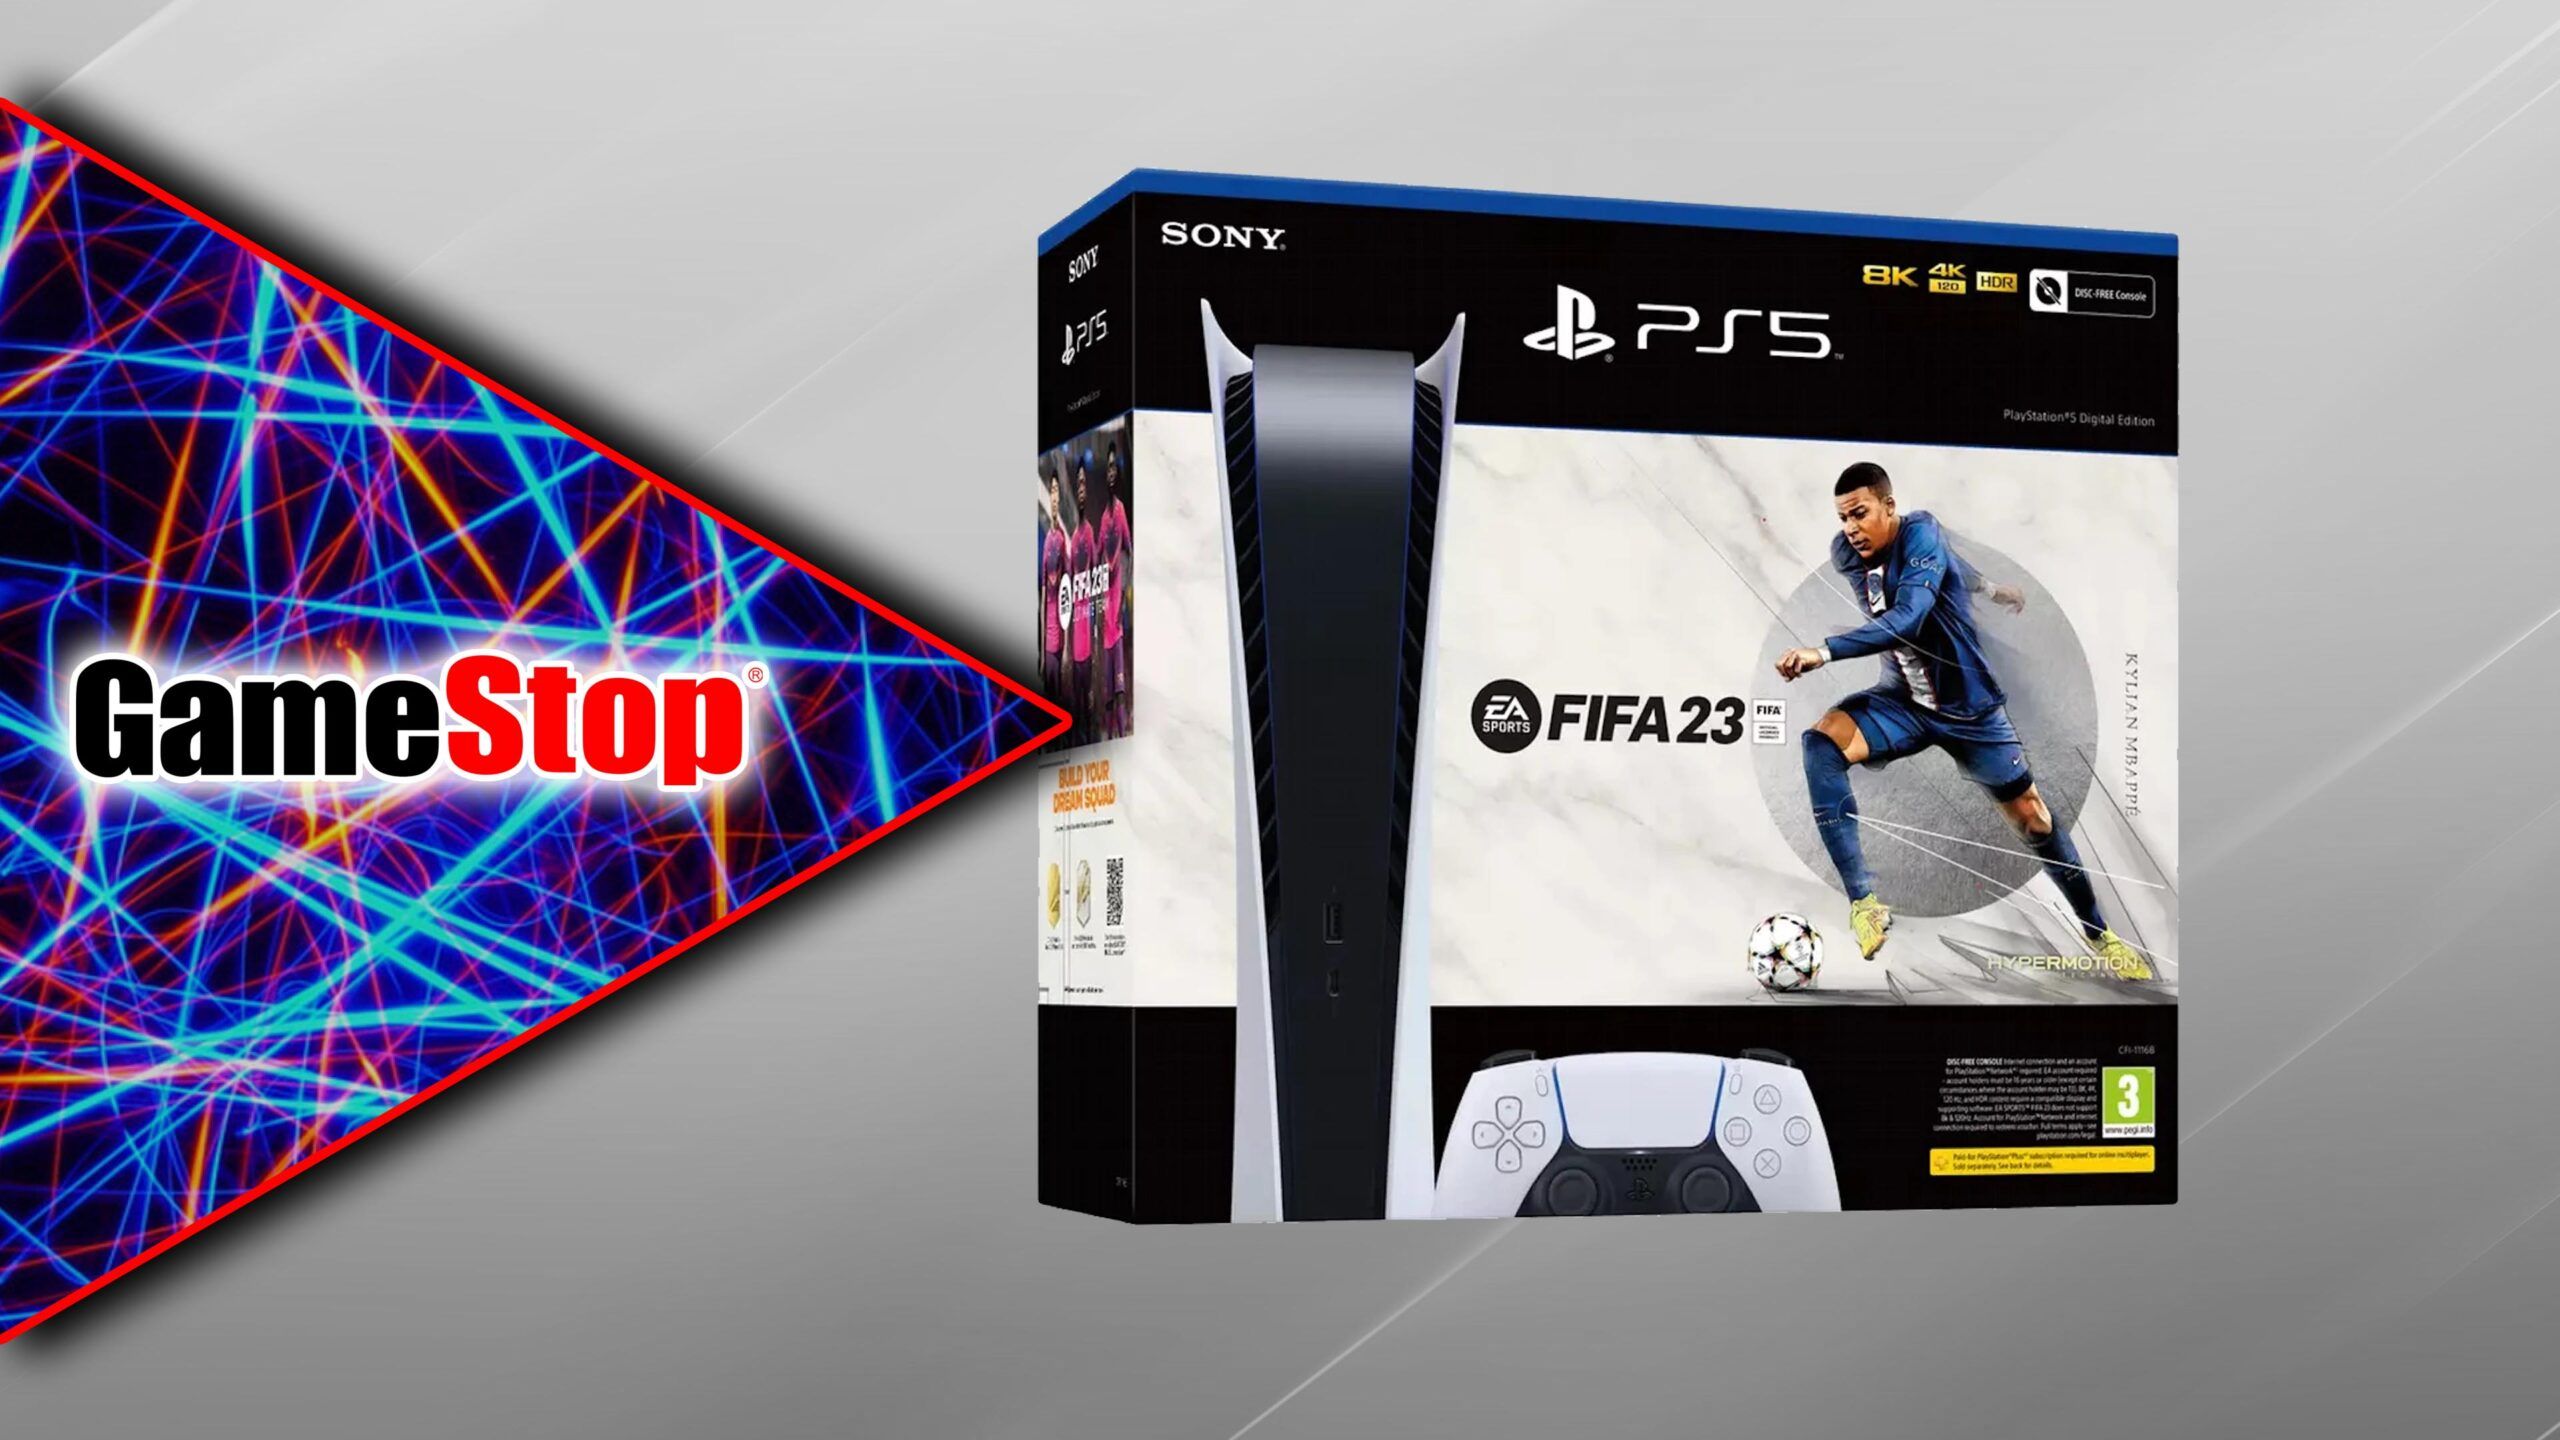 La edición digital de PlayStation 5 vuelve a estar disponible con FIFA 23 en un nuevo lanzamiento de GameStop esta semana